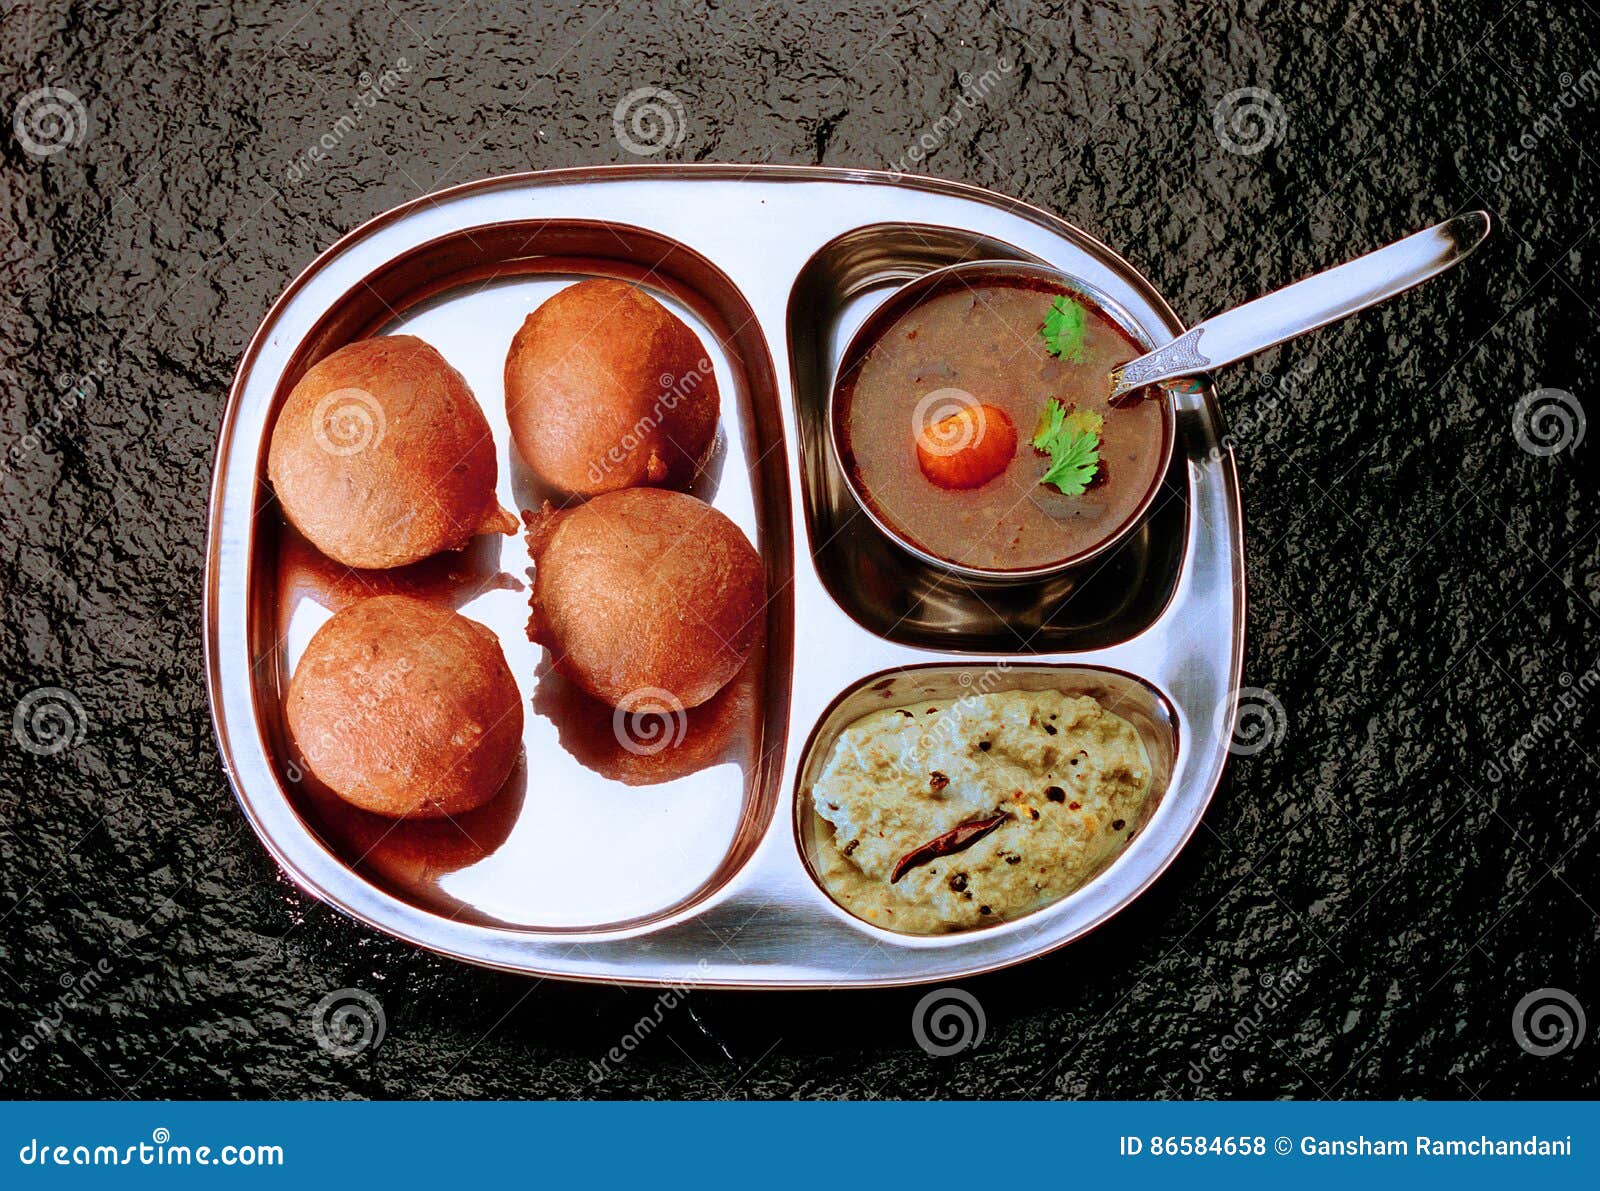 mysore bhajji with sambar & chutney